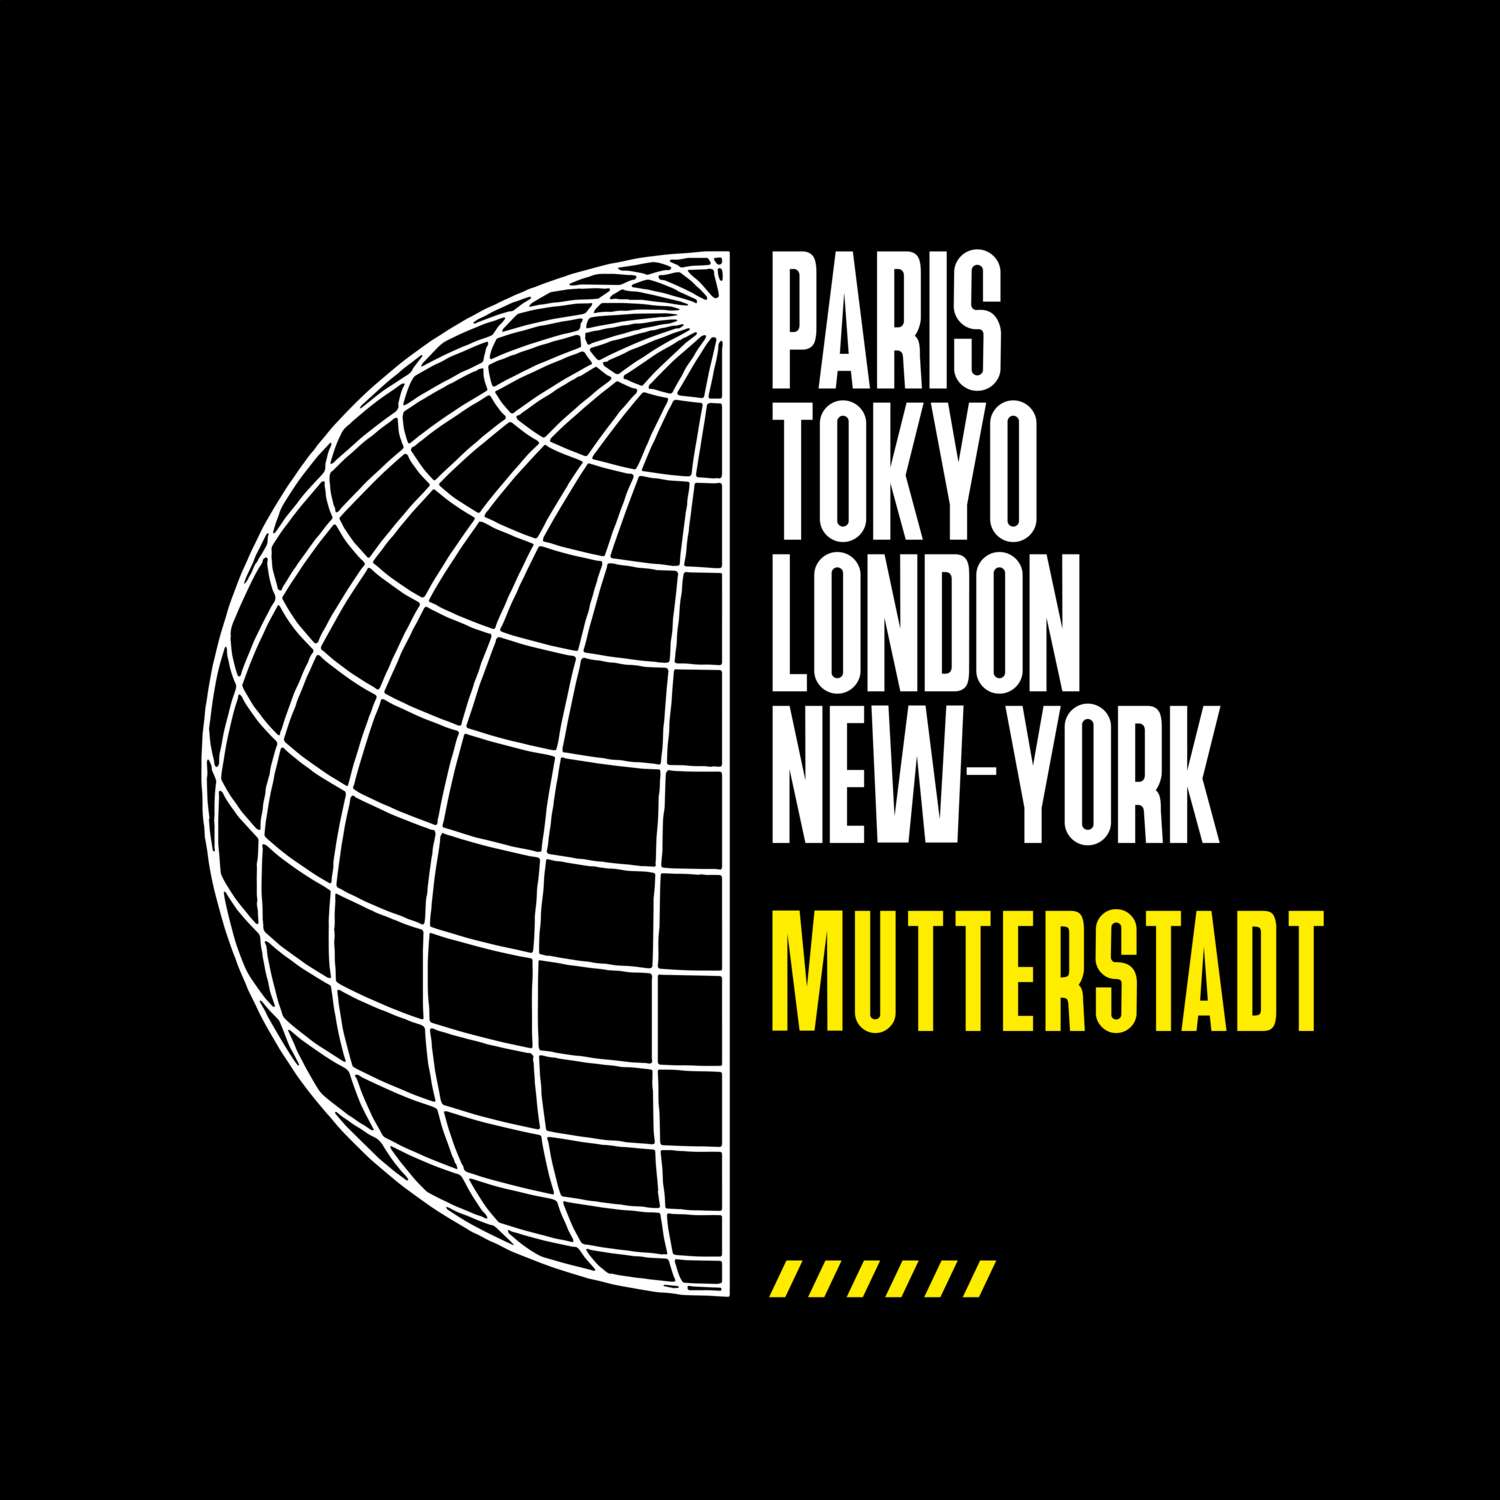 Mutterstadt T-Shirt »Paris Tokyo London«